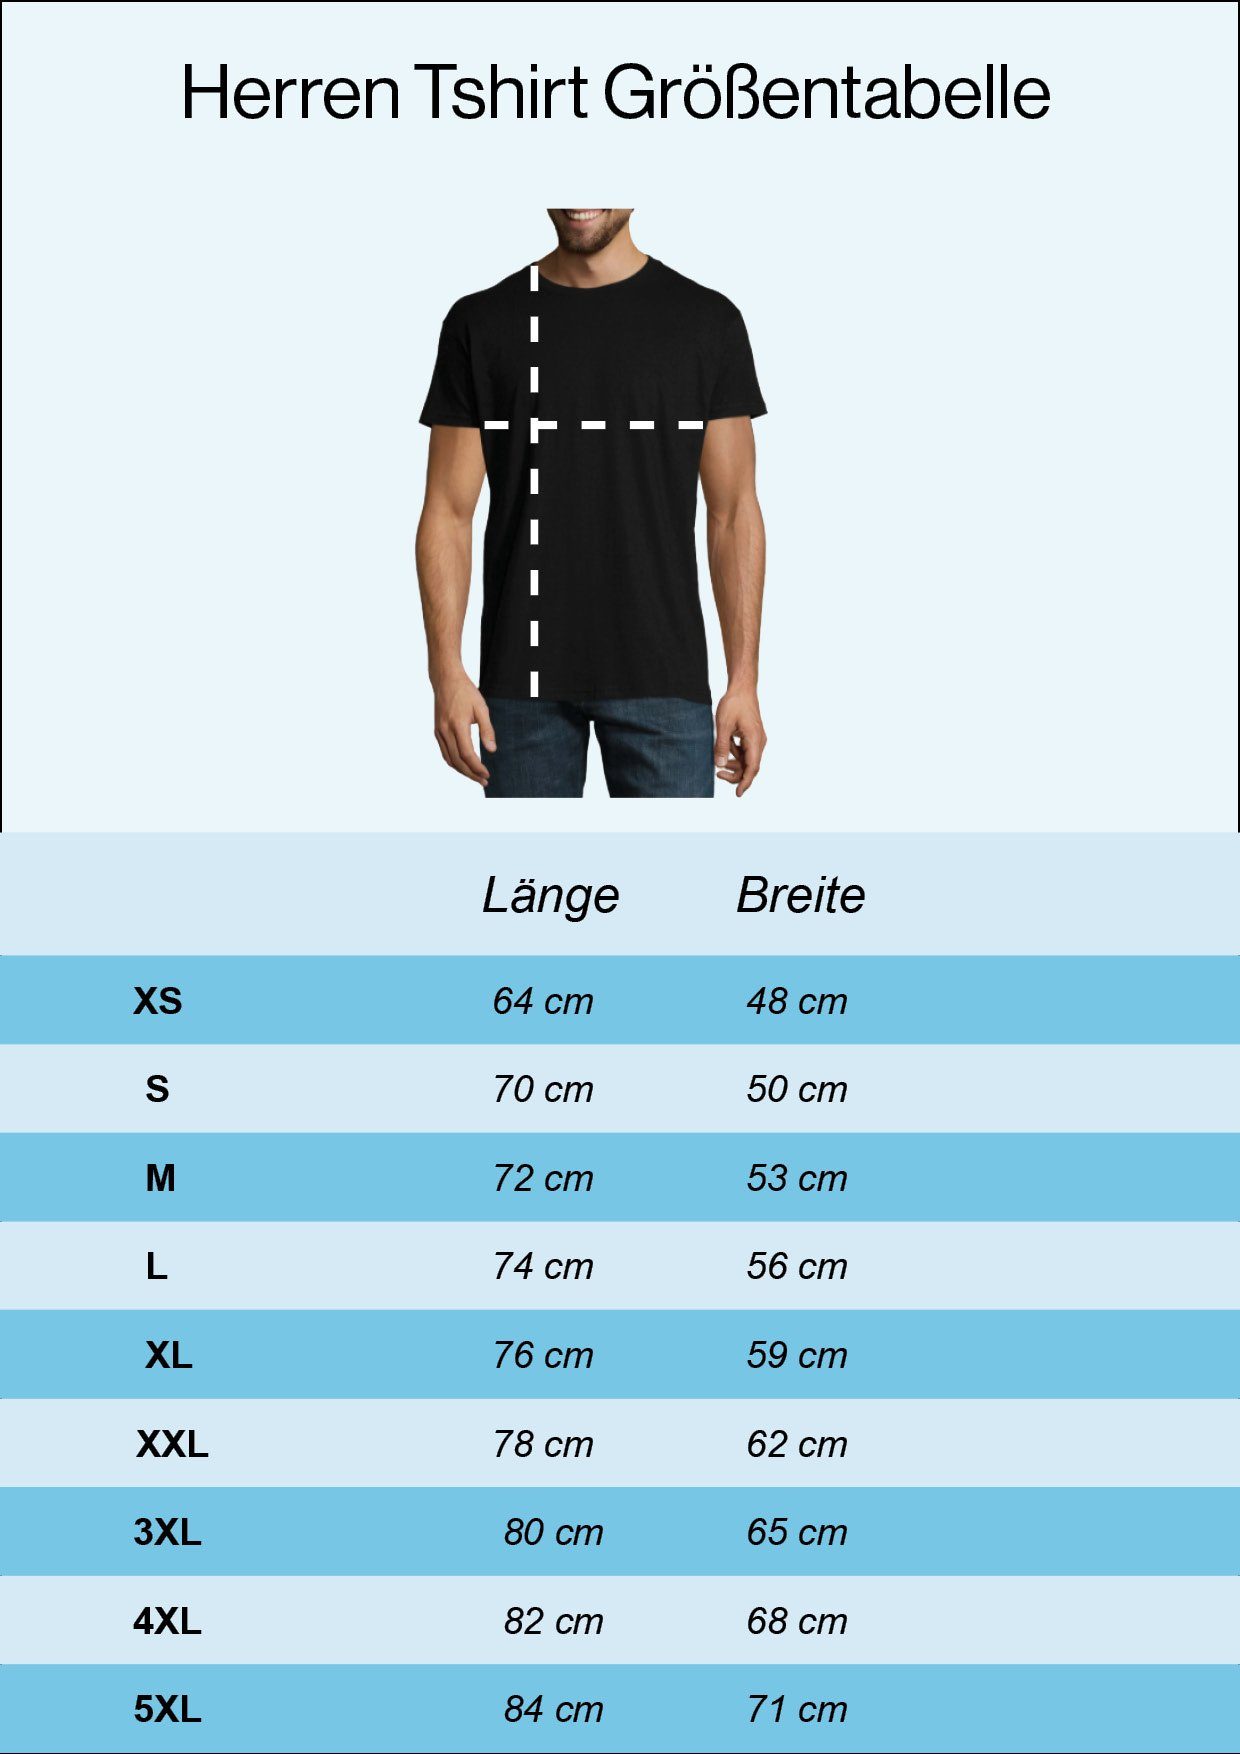 Youth Designz Frontdruck 420 Regenbogen Herren T-Shirt mit Burgund Trendigem T-Shirt